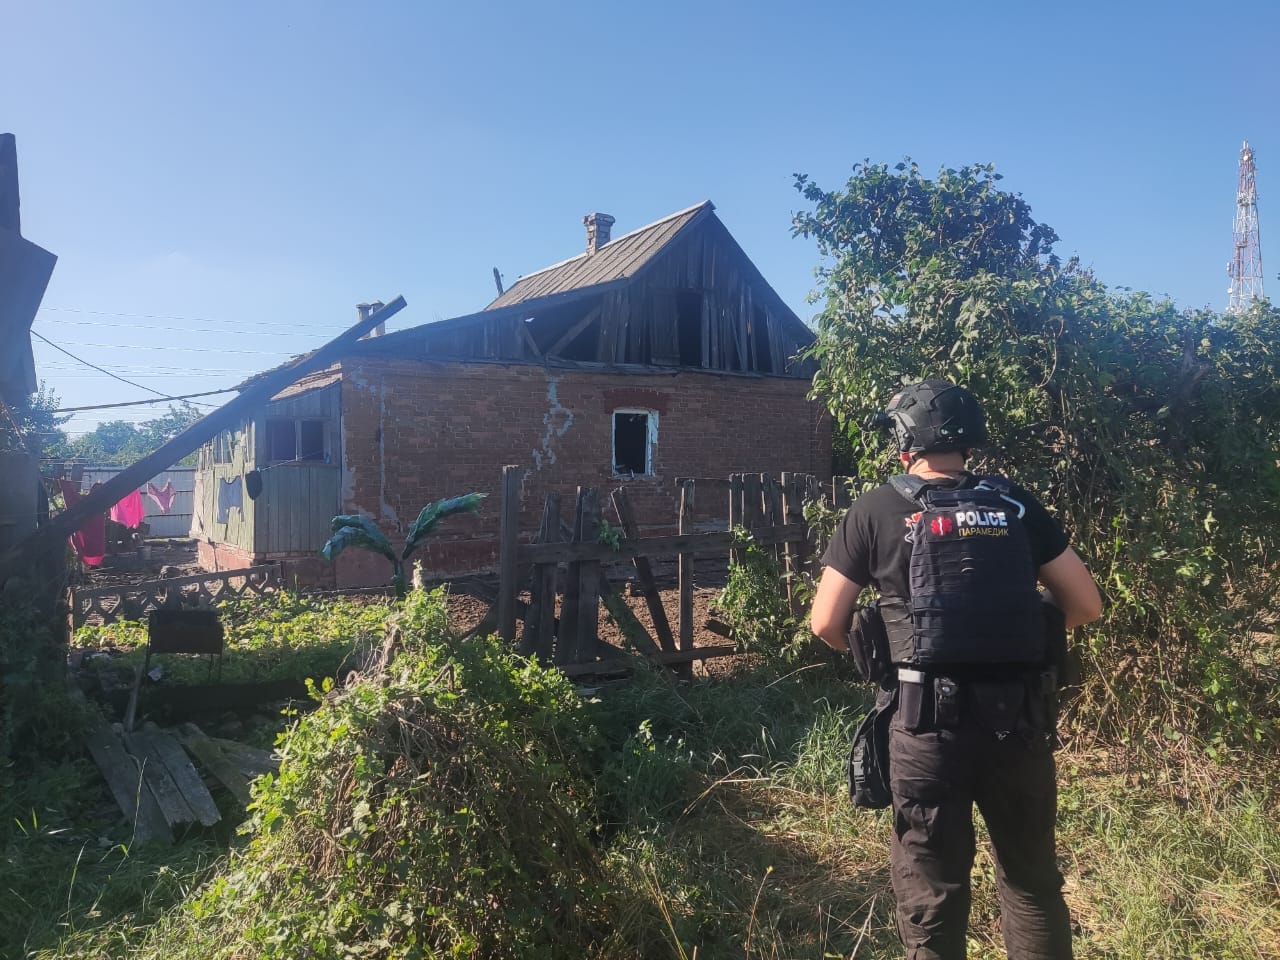 Приватний будинок, який зруйнували росіяни 17 серпня на Донеччині